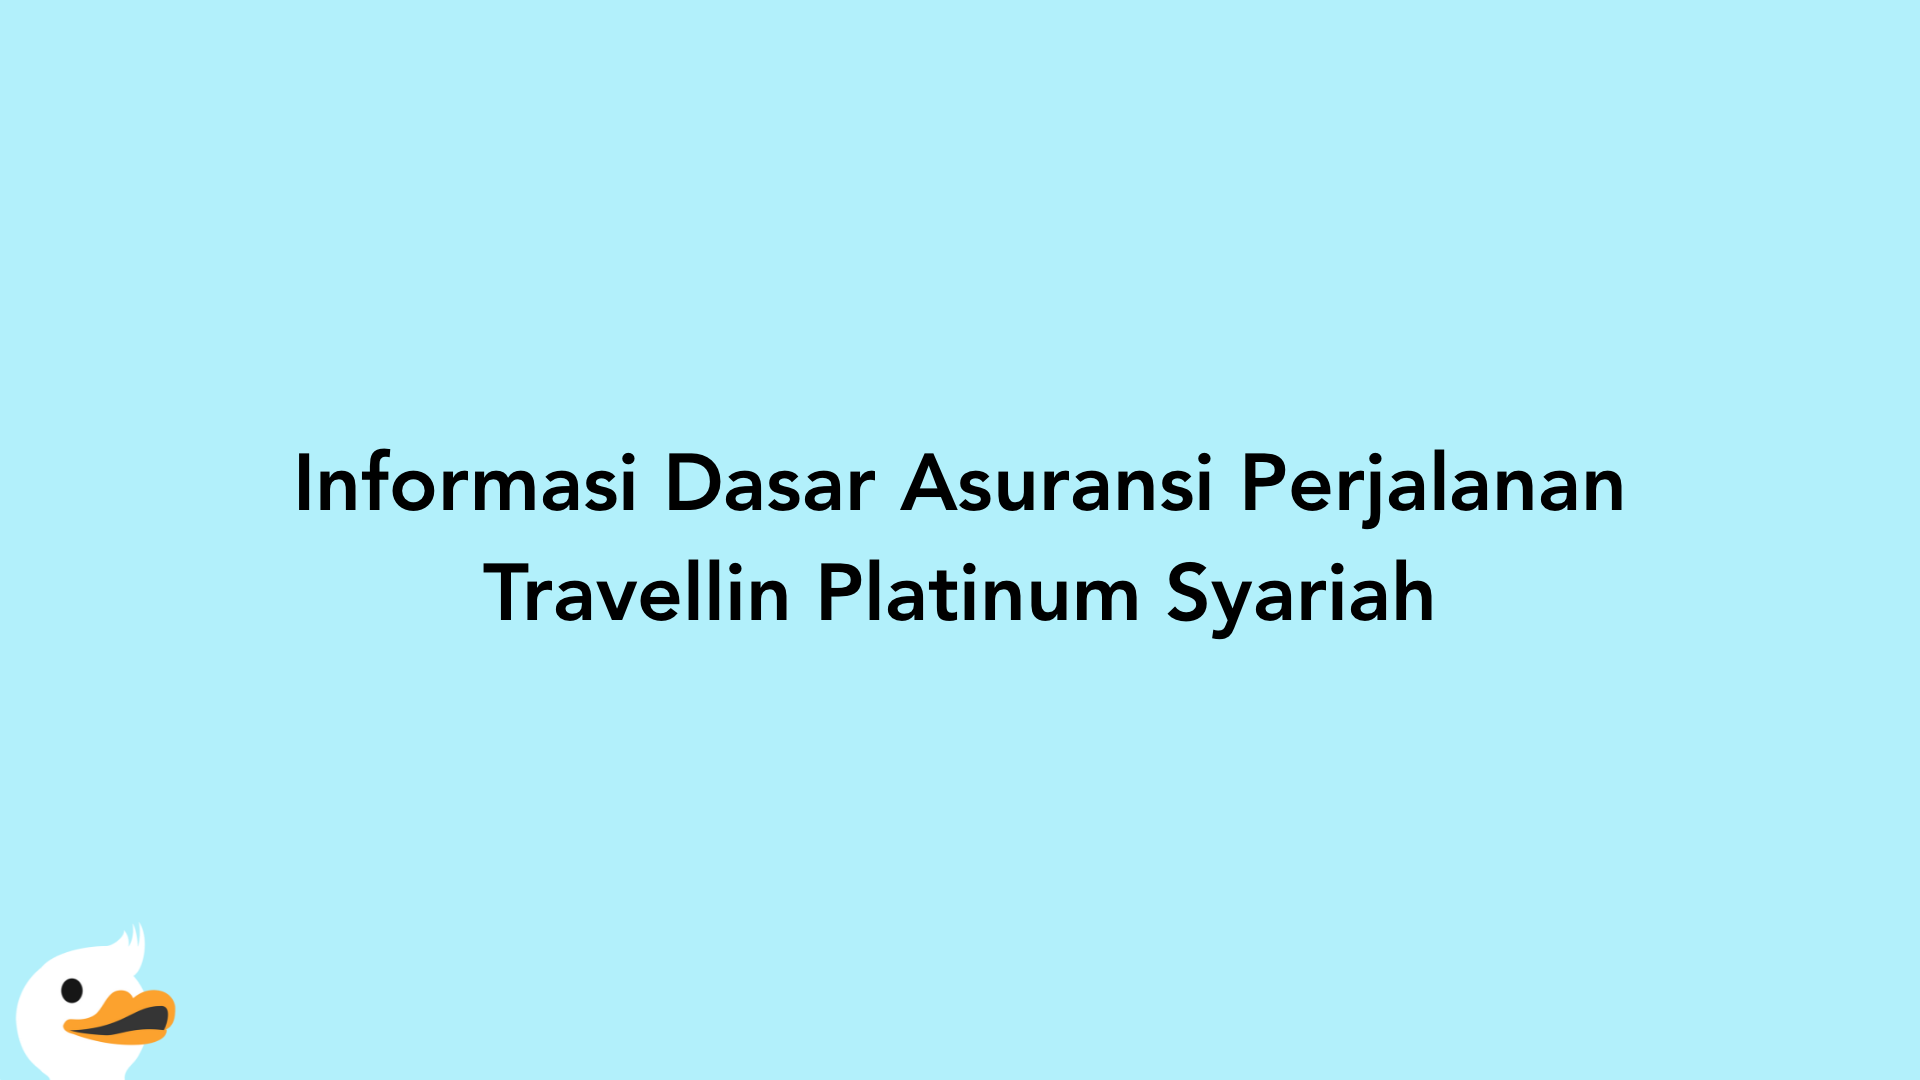 Informasi Dasar Asuransi Perjalanan Travellin Platinum Syariah